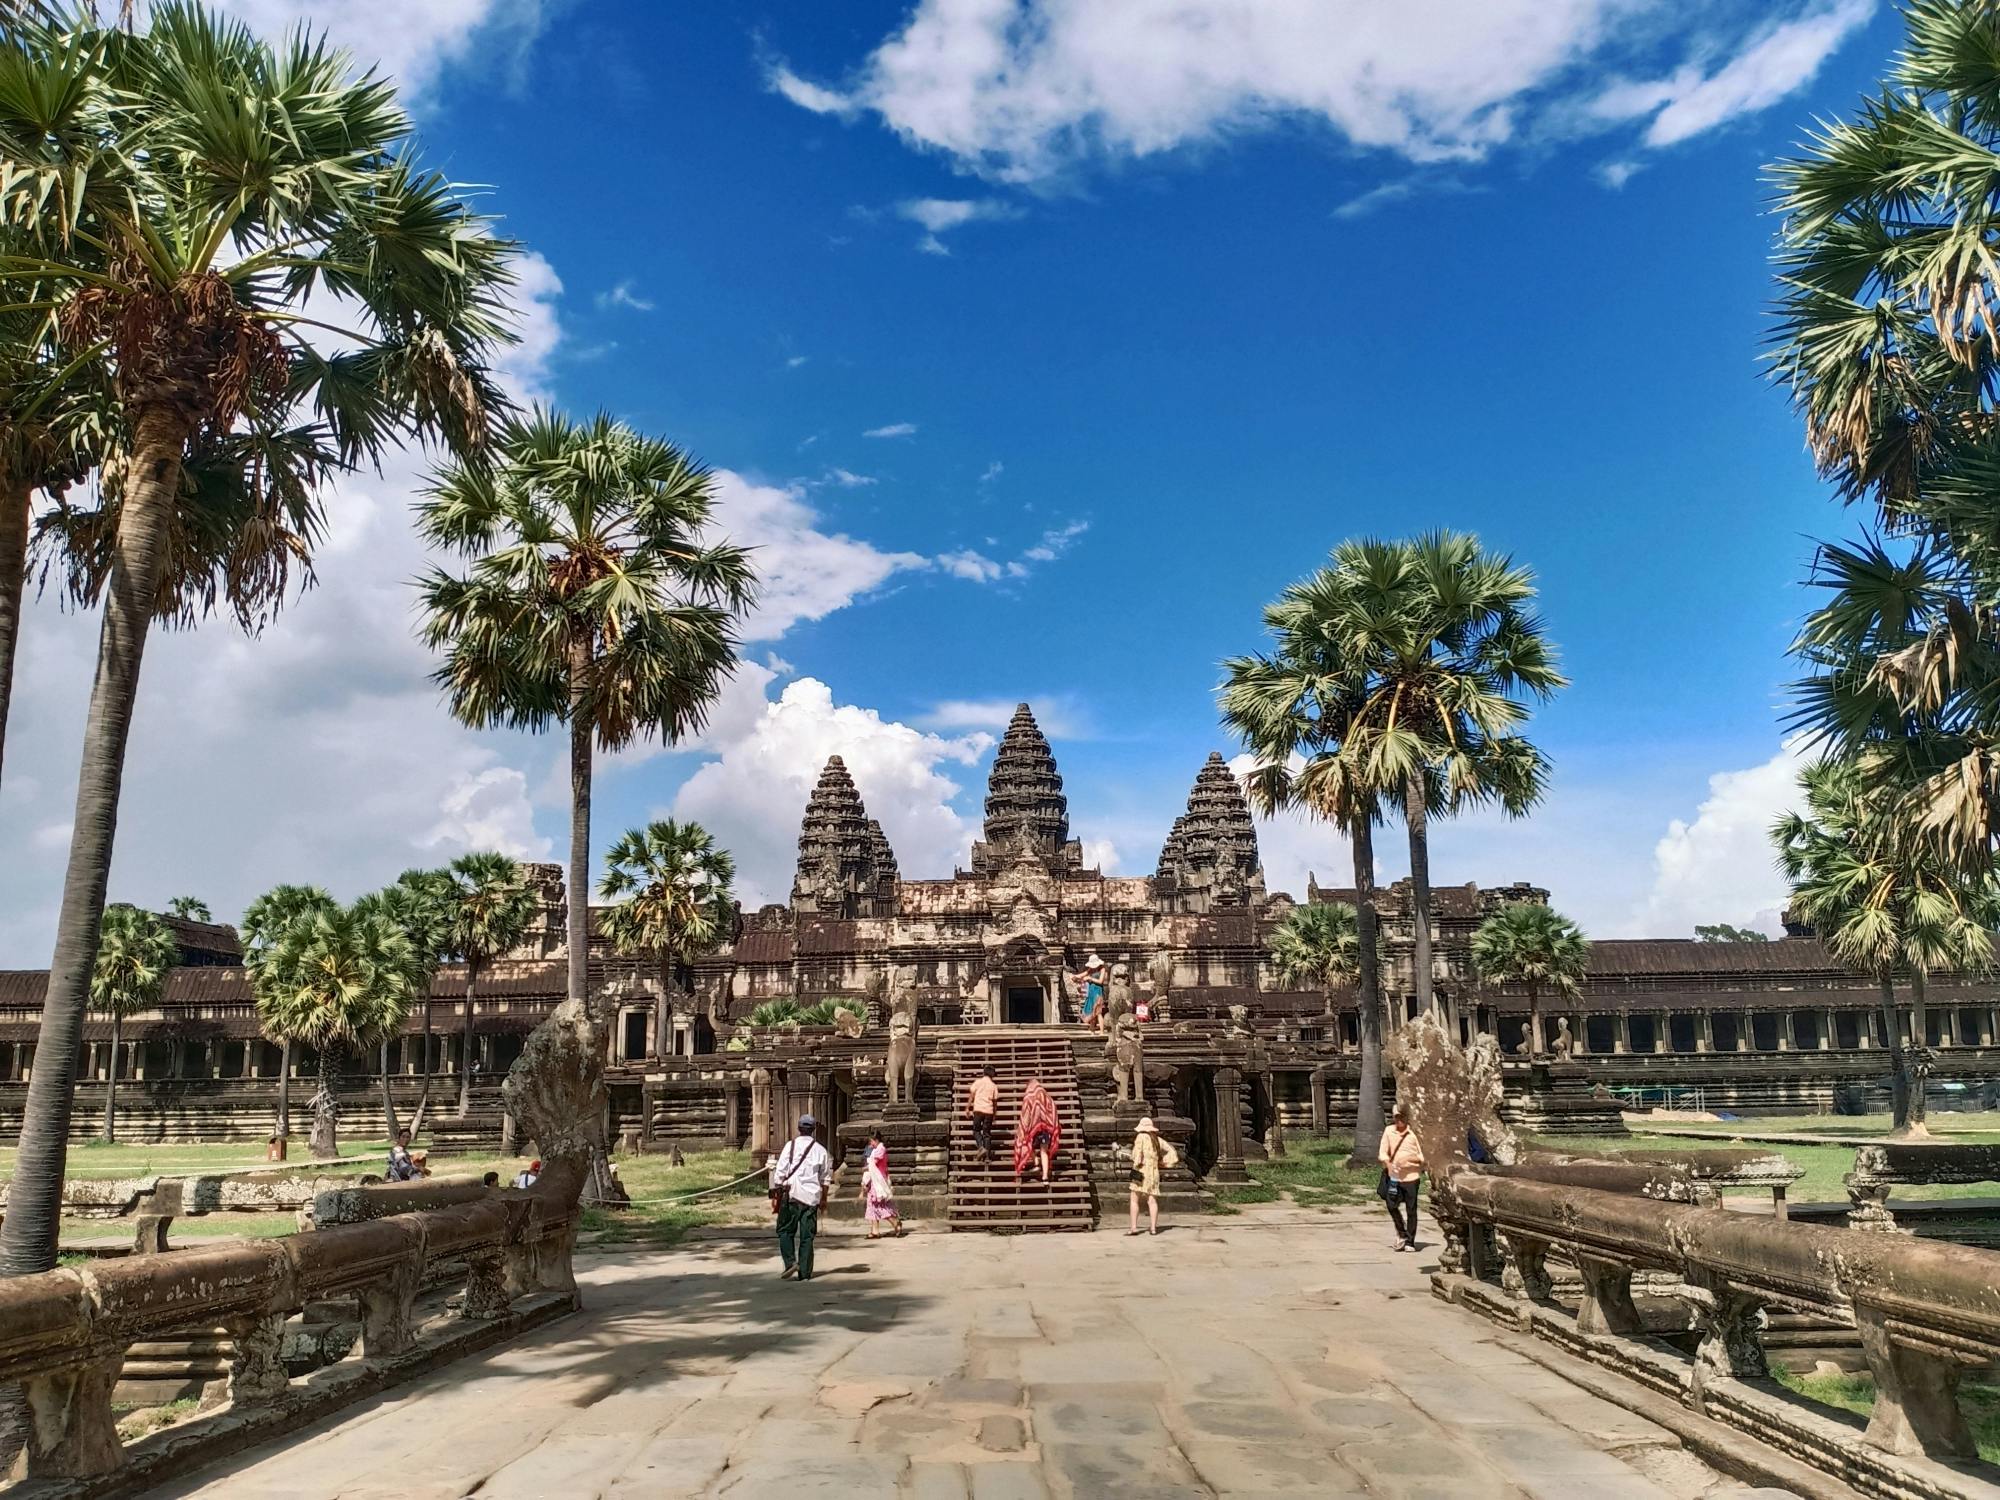 Private Führung durch die Angkor-Tempel mit Hin- und Rücktransport